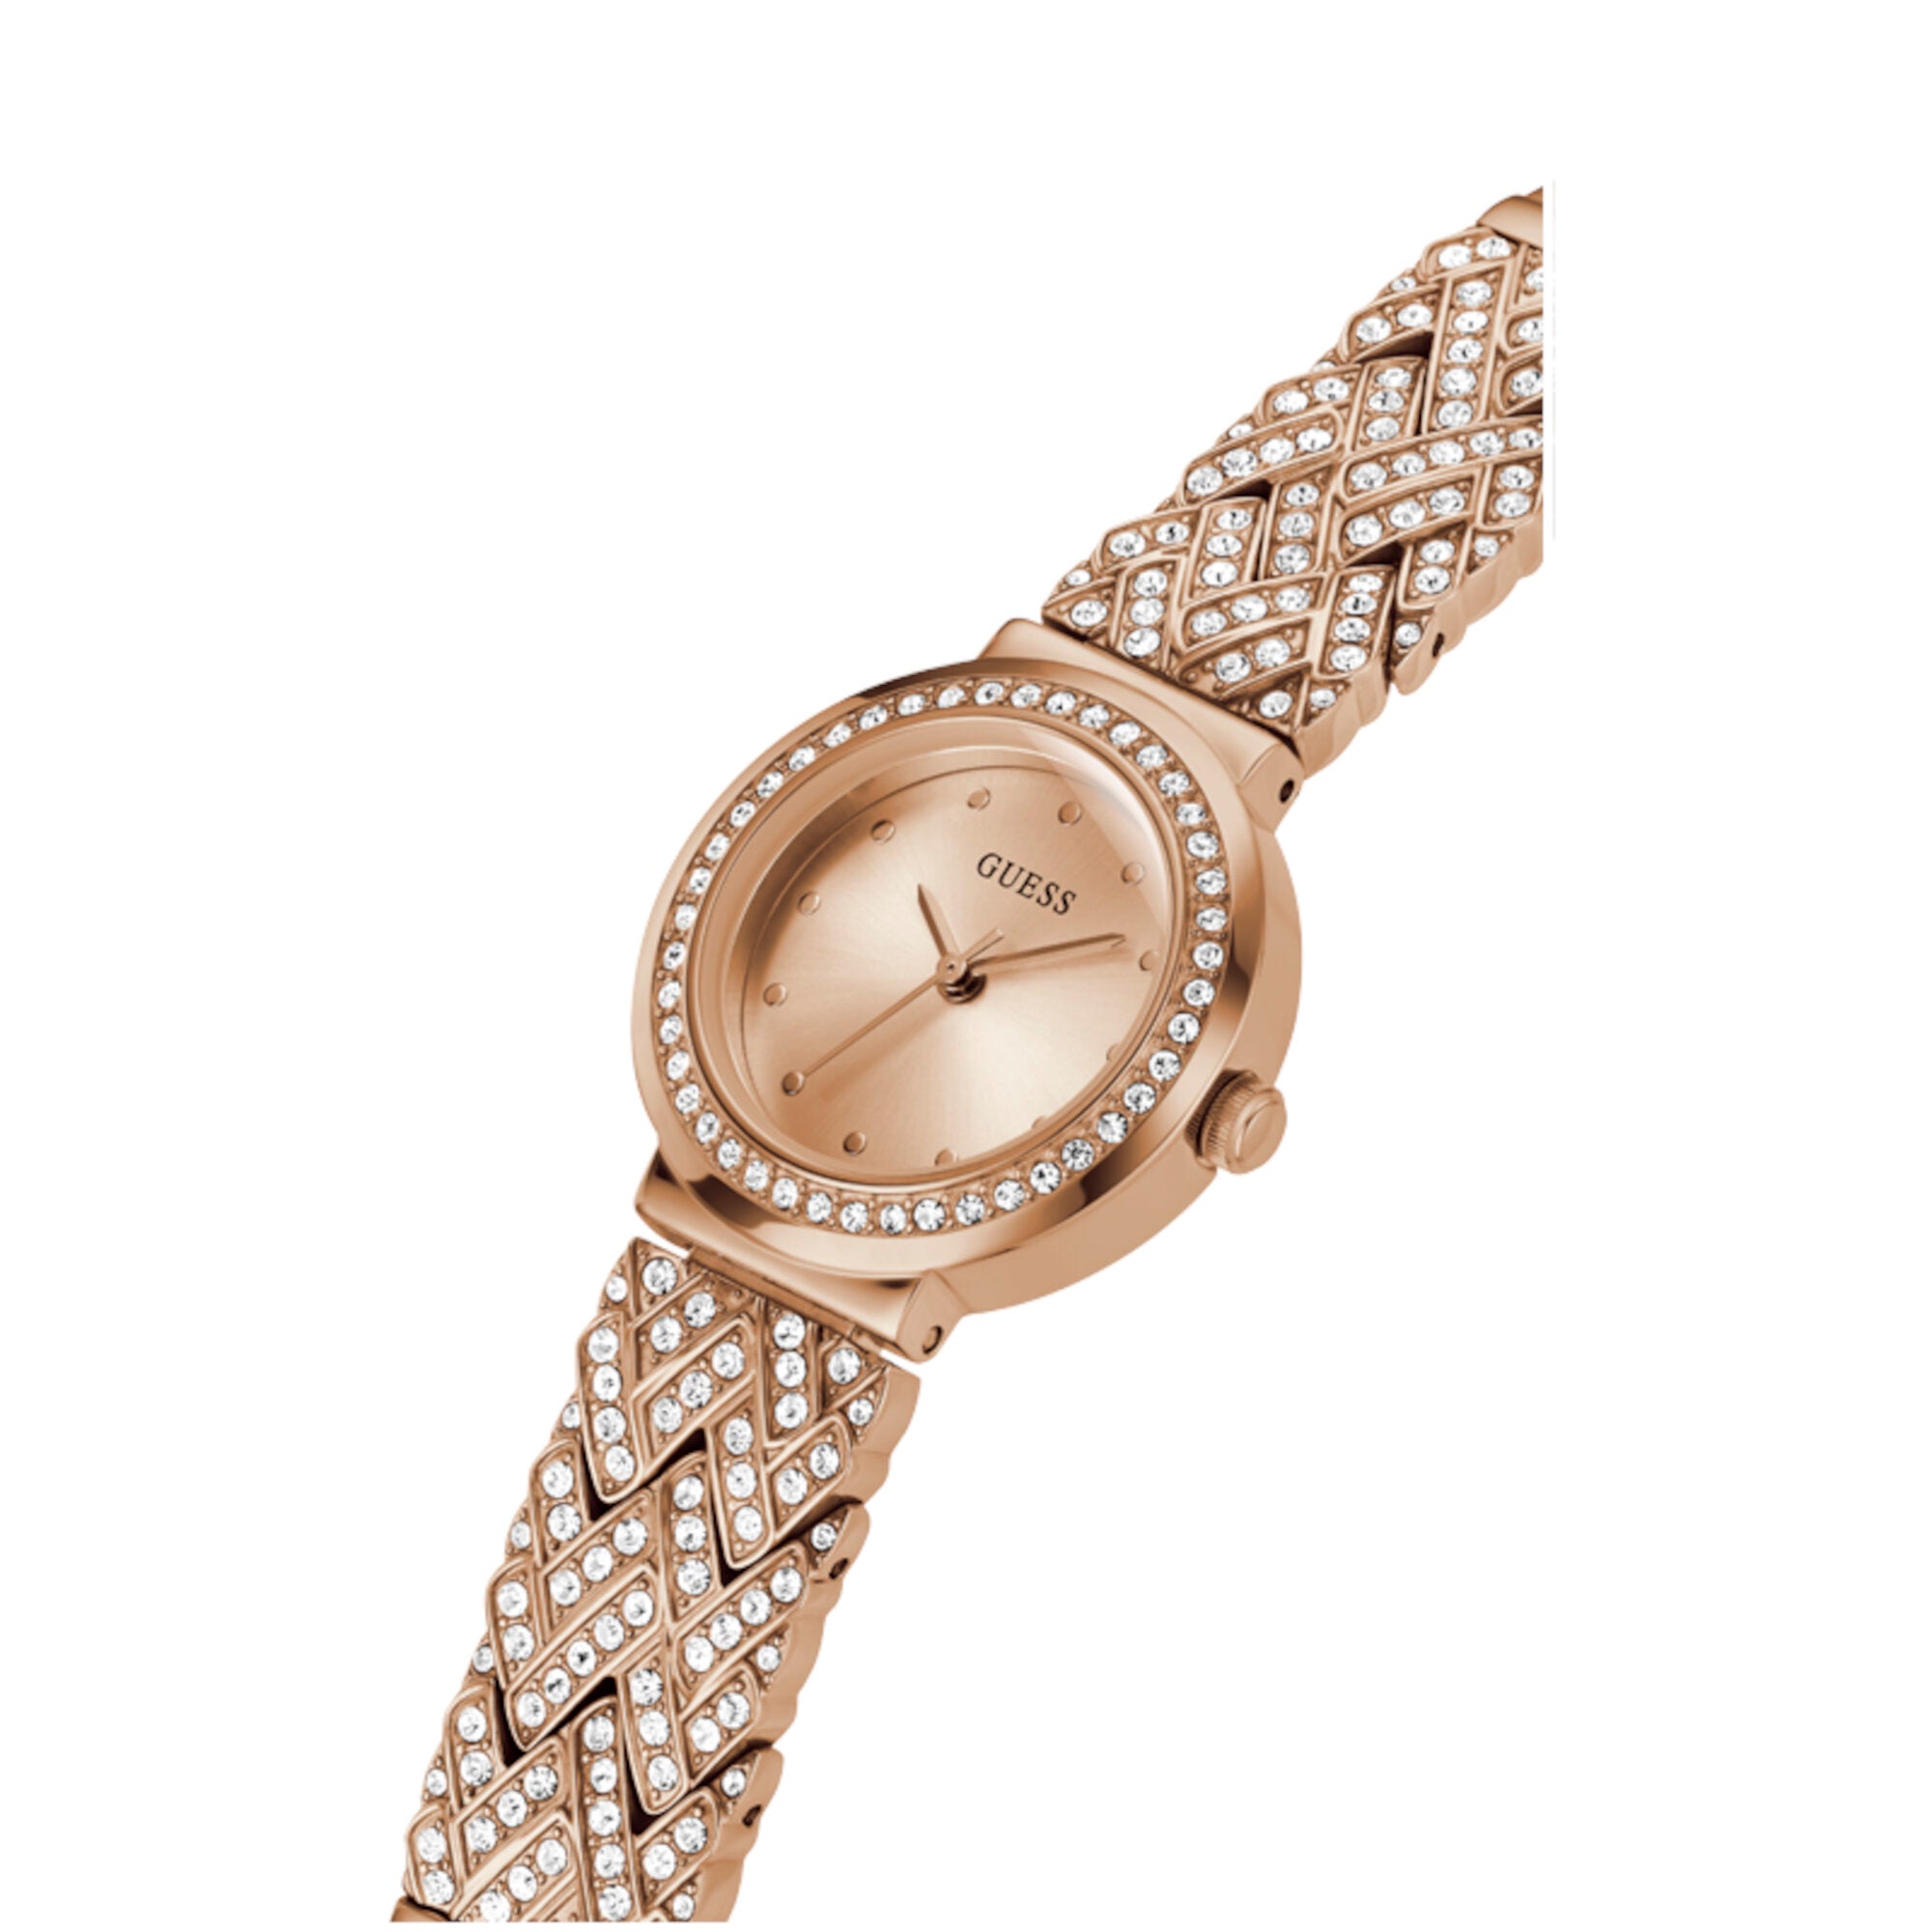 Reloj Guess de mujer Treasure color oro rosa